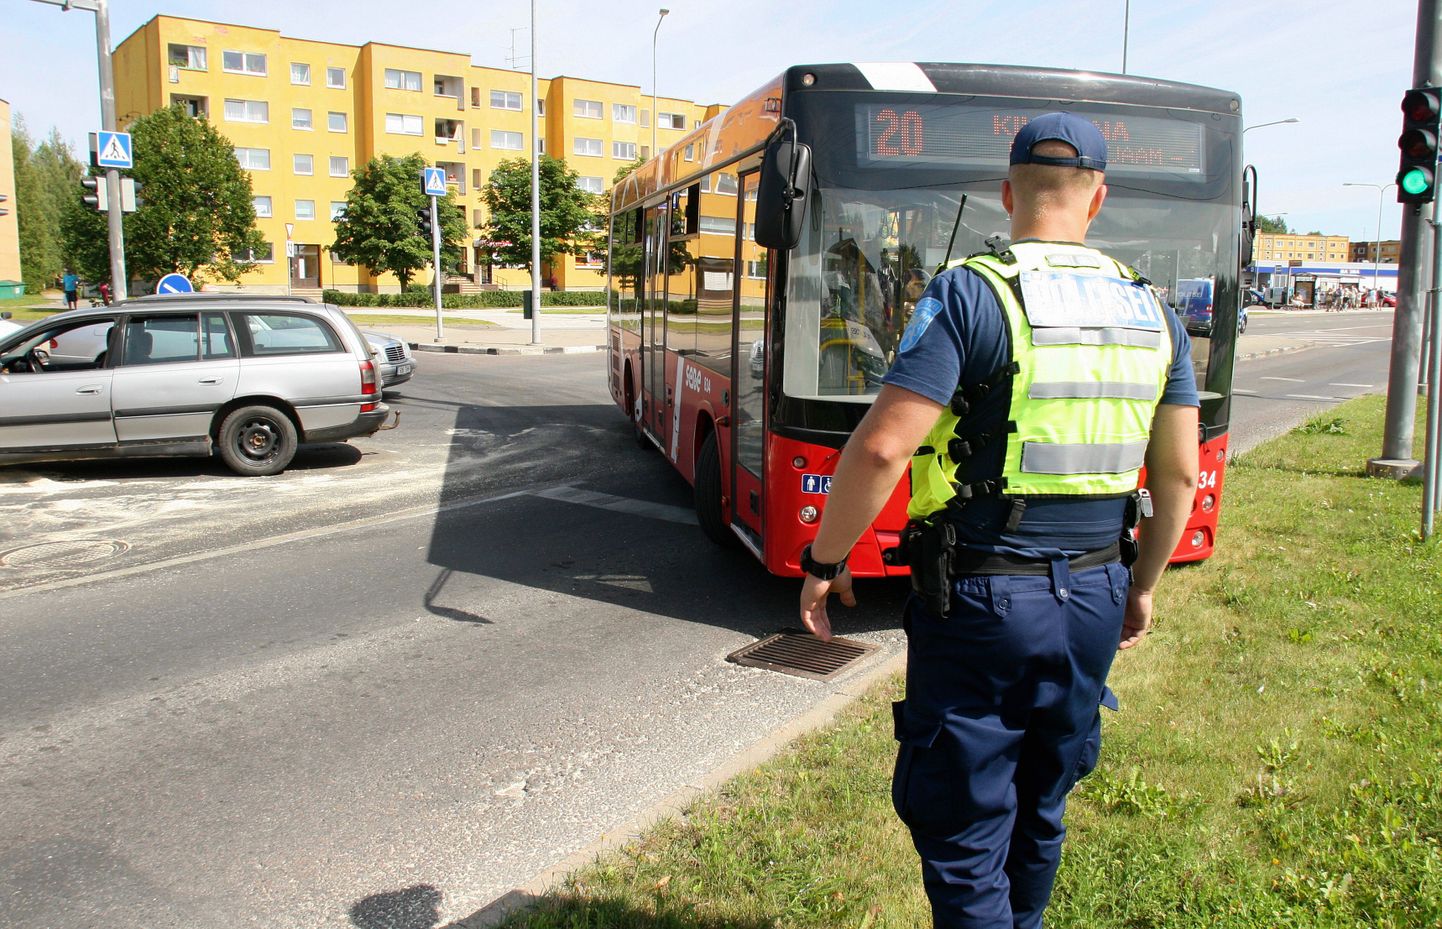 Liiklusõnnetus Tartus Kalda tee ja Kaunase puiestee ristmikul.